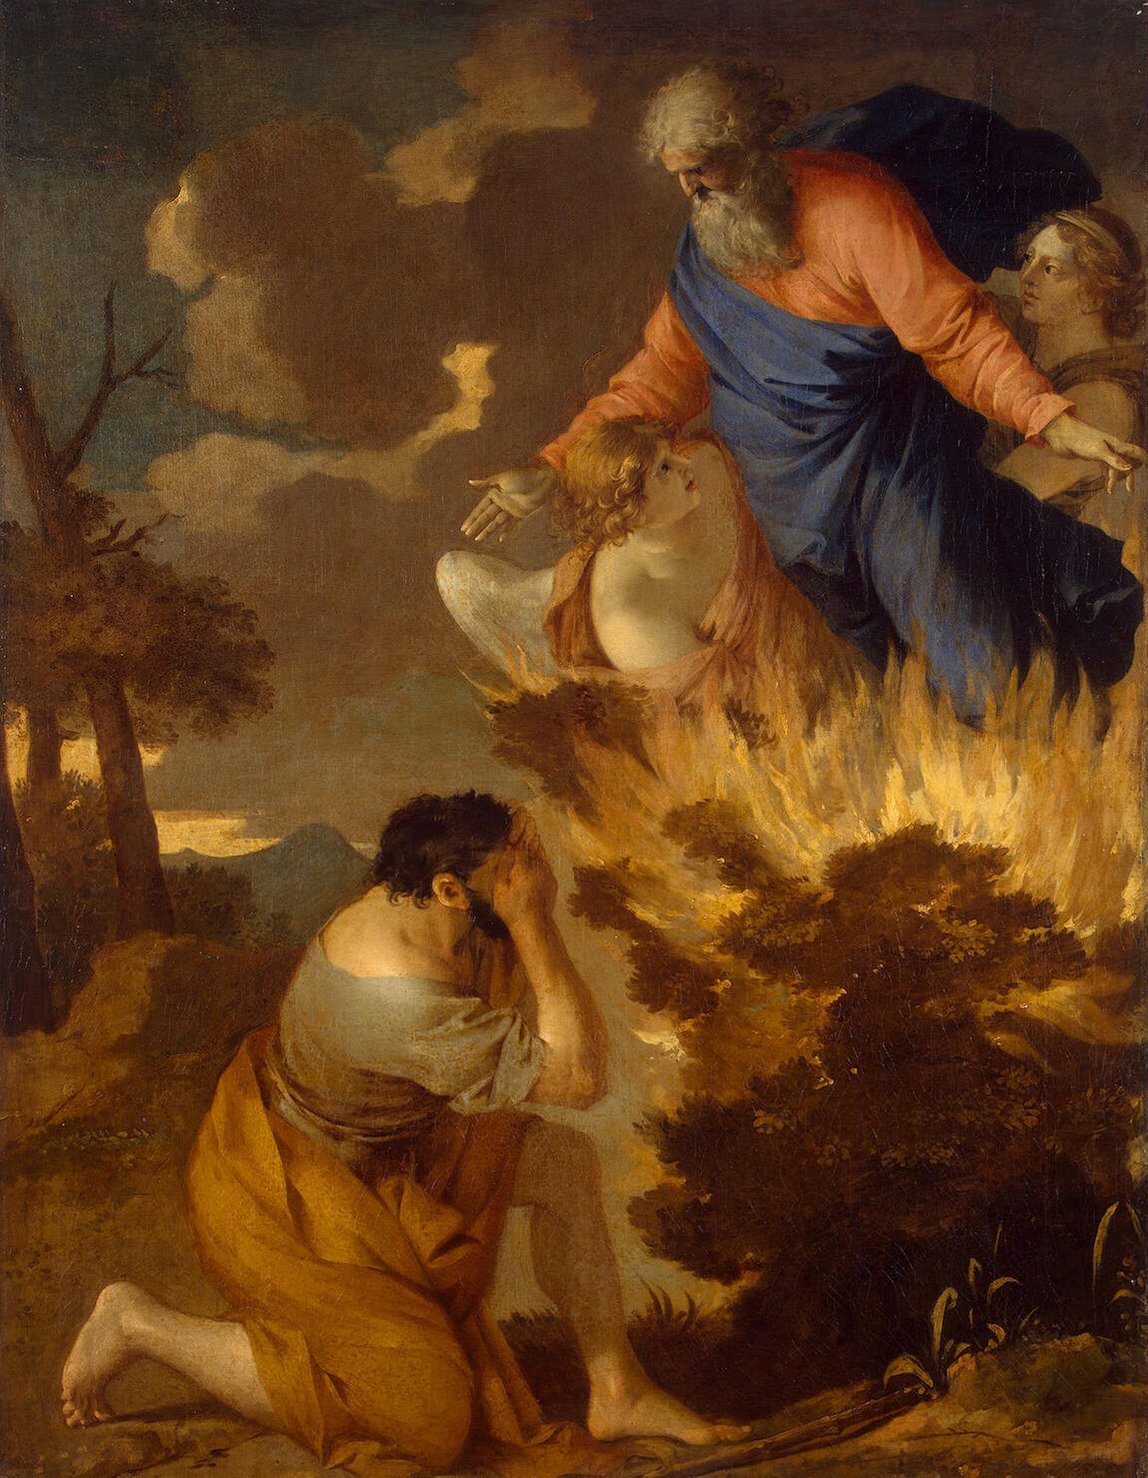 Obraz przedstawia płonący krzew, nad którym unosi się starszy mężczyzna z brodą. Towarzysza mu dwa anioły. Przed krzewem klęczy wsparty na jednym kolanie mężczyzna. Twarz ukrył w dłoniach. 